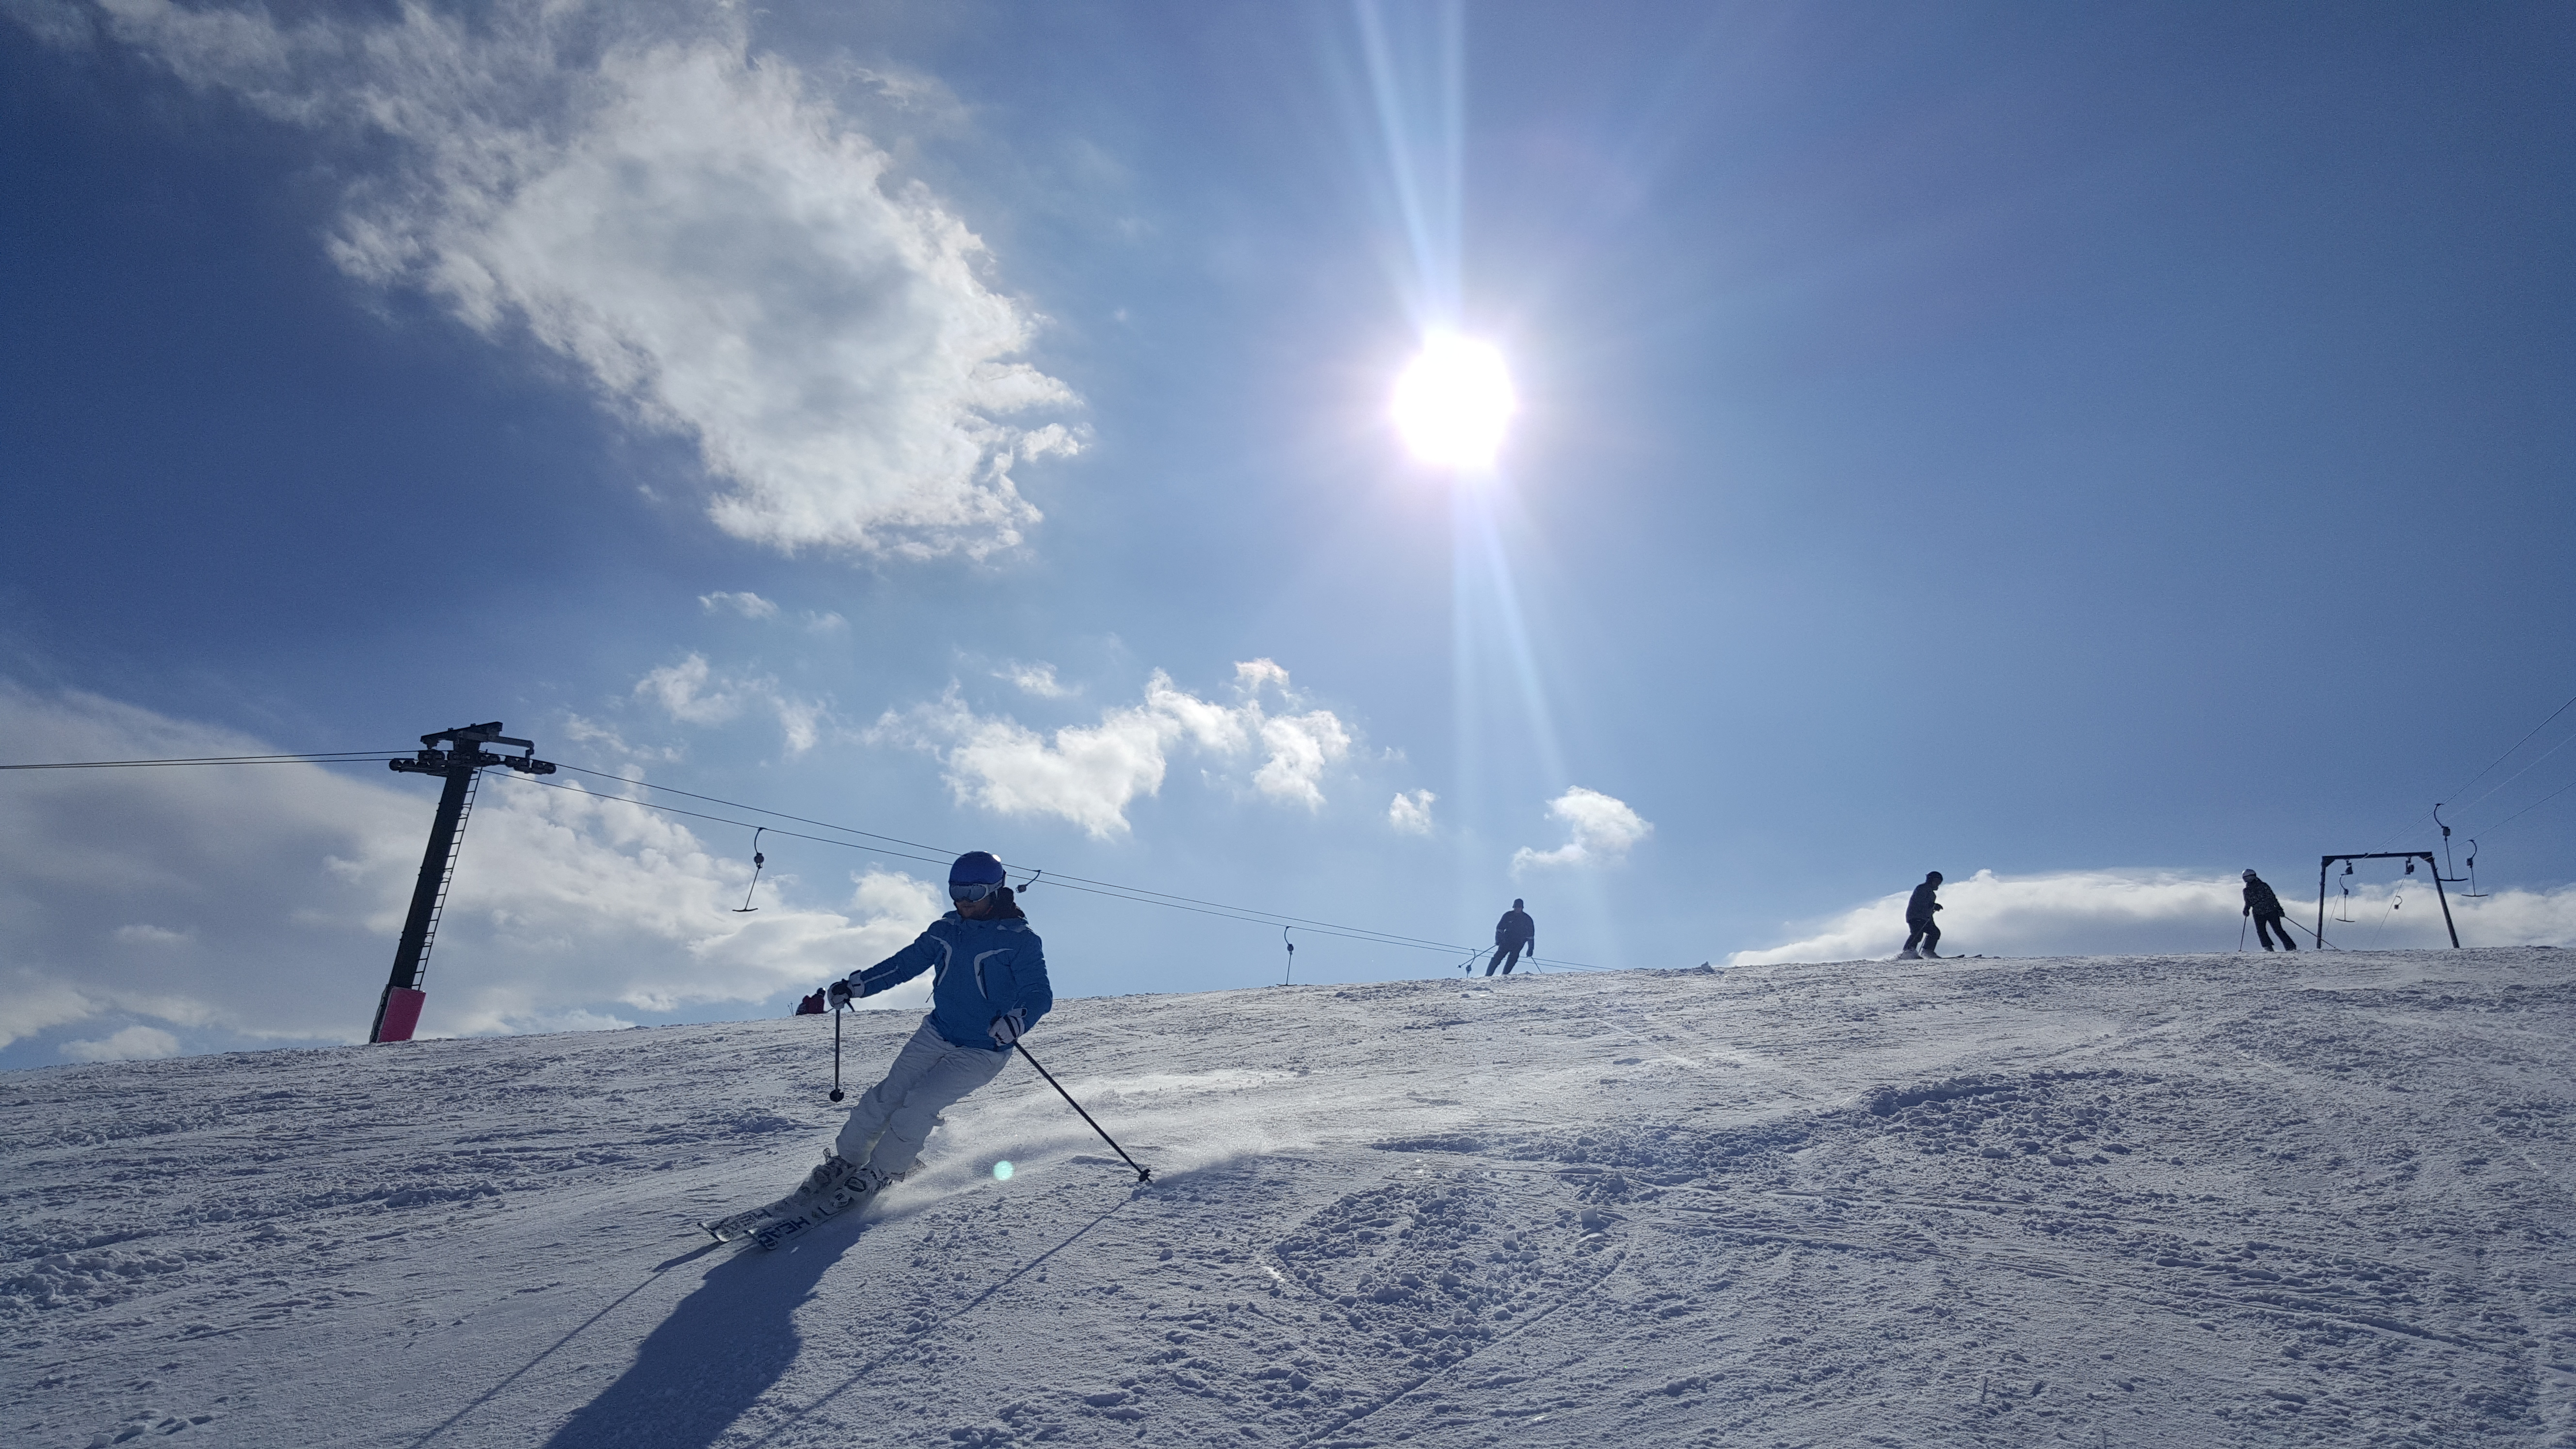 Skiing on "Galicki 1", Mavrovo-Zare Lazarevski